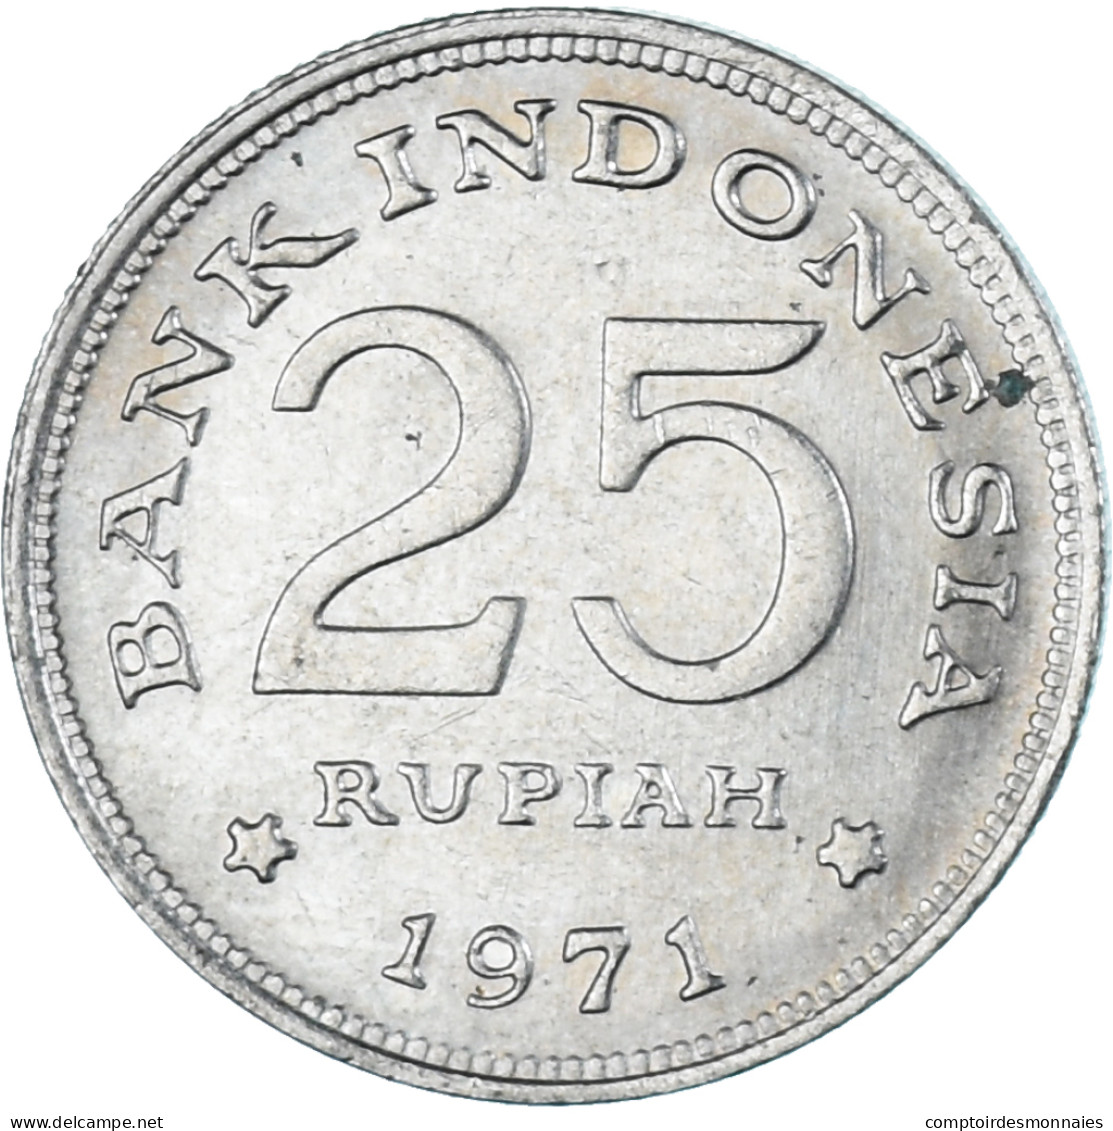 Monnaie, Indonésie, 25 Rupiah, 1971 - Indonesië